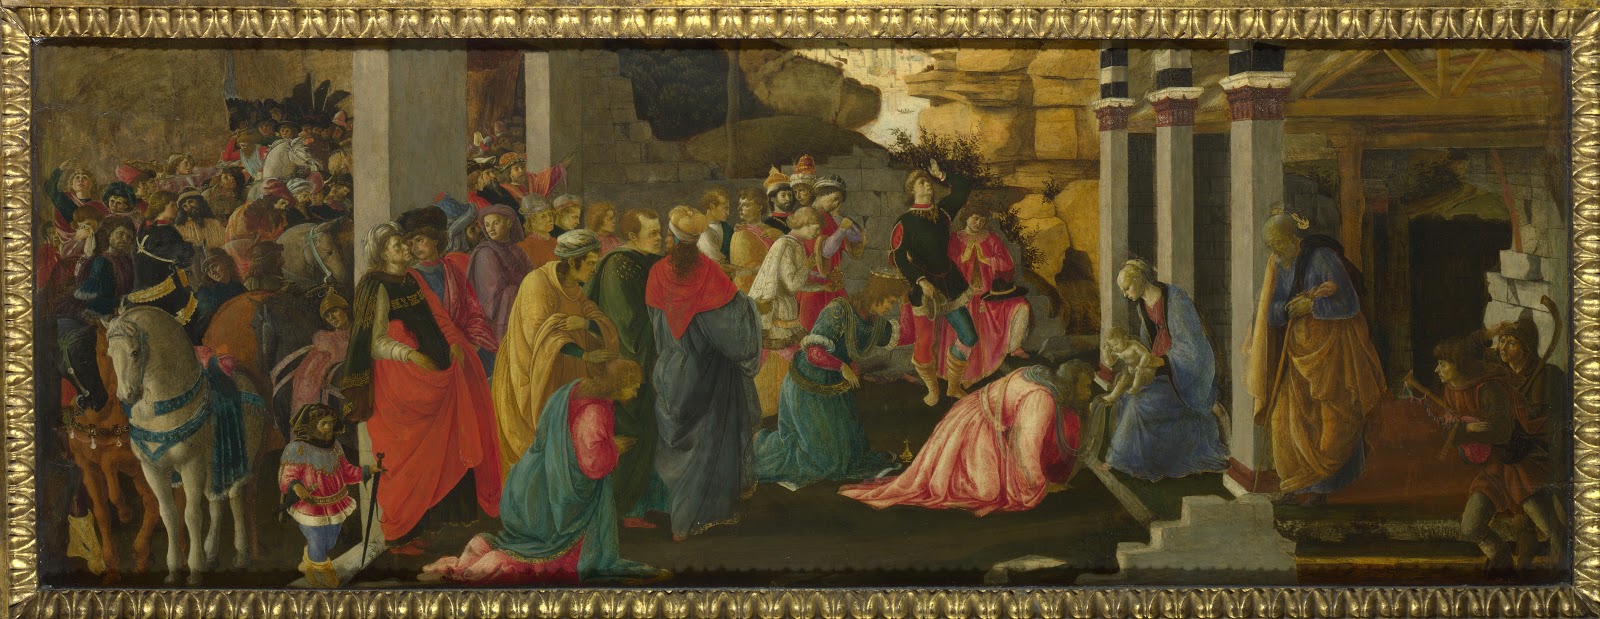 Sandro+Botticelli-1445-1510 (302).jpg